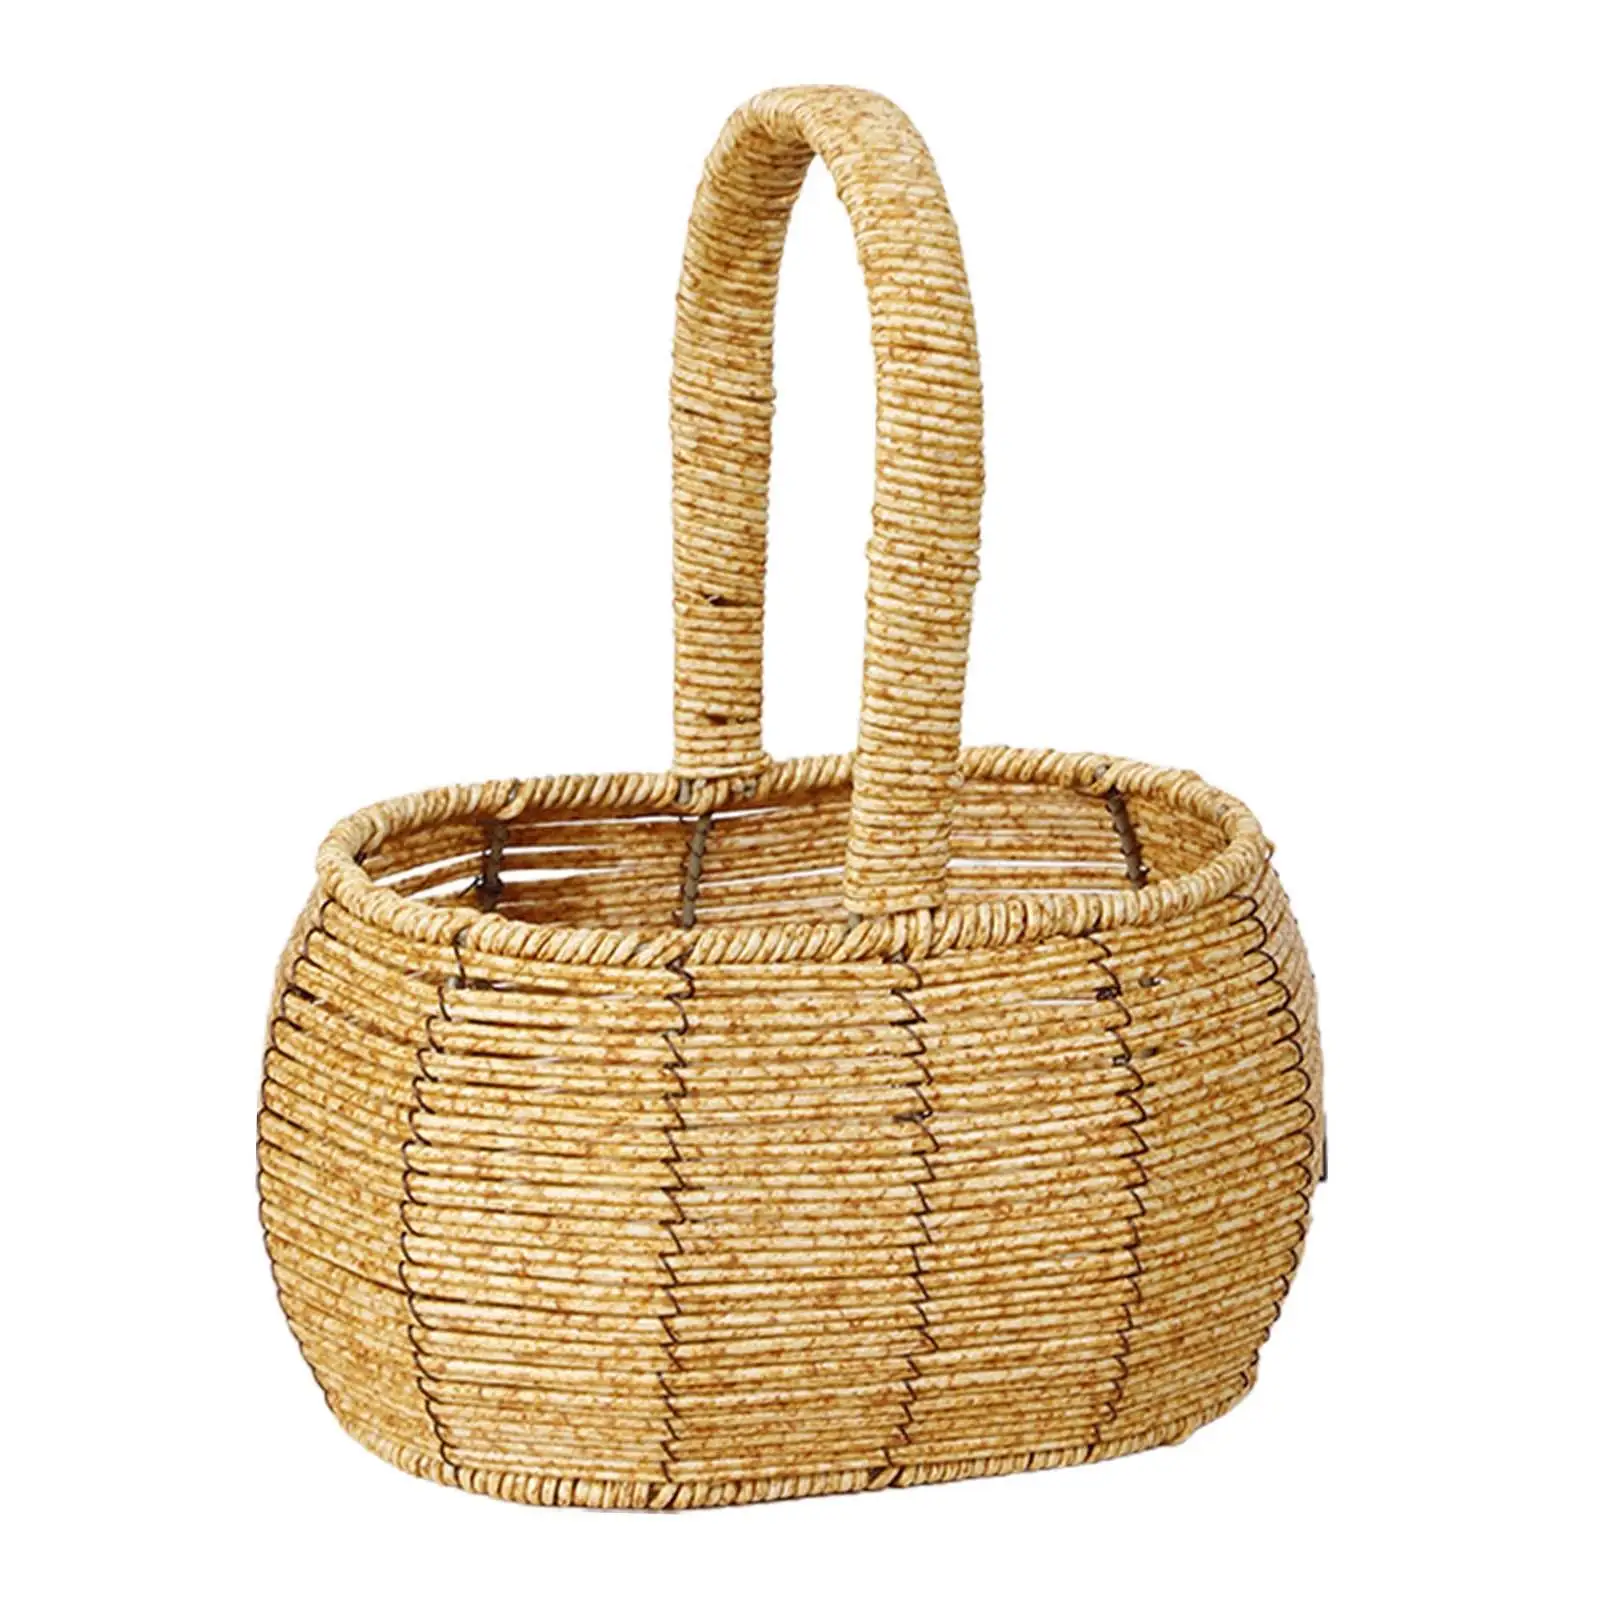 Storage Basket with Handles Fruits Holder Decor Handwoven Basket Flower Basket for Wedding Picnic Basket for Gardening Farmhouse